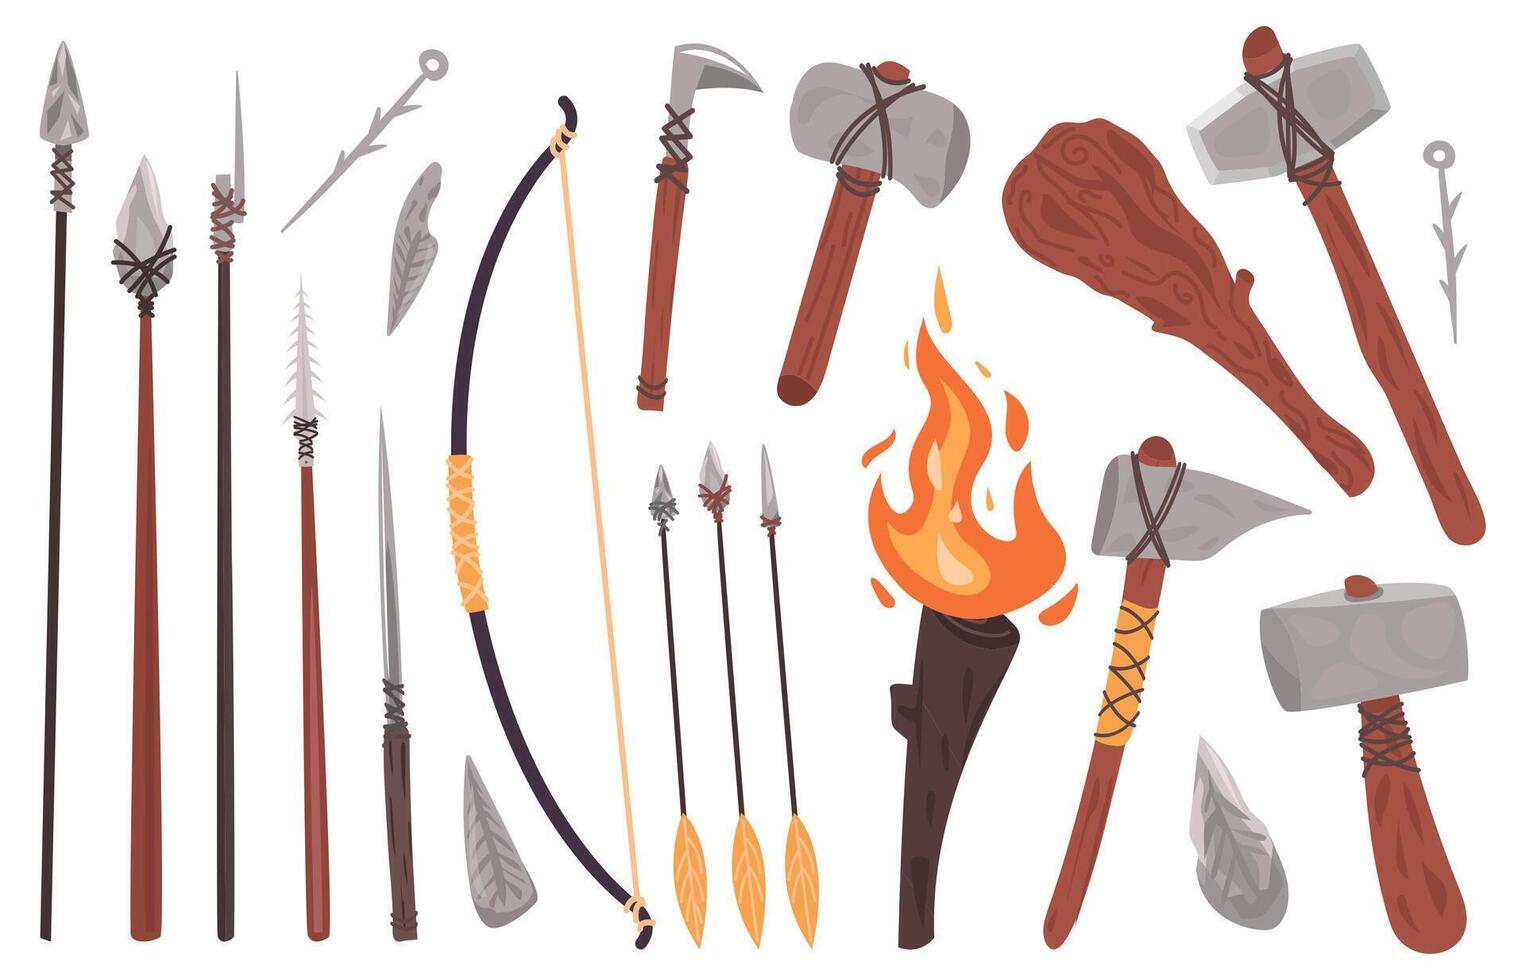 primitiv kultur verktyg. sten ålder sten eller trä- vapen, hammare, spjut, yxa, brand fackla. förhistorisk caveman primitiv vapen vektor illustration uppsättning